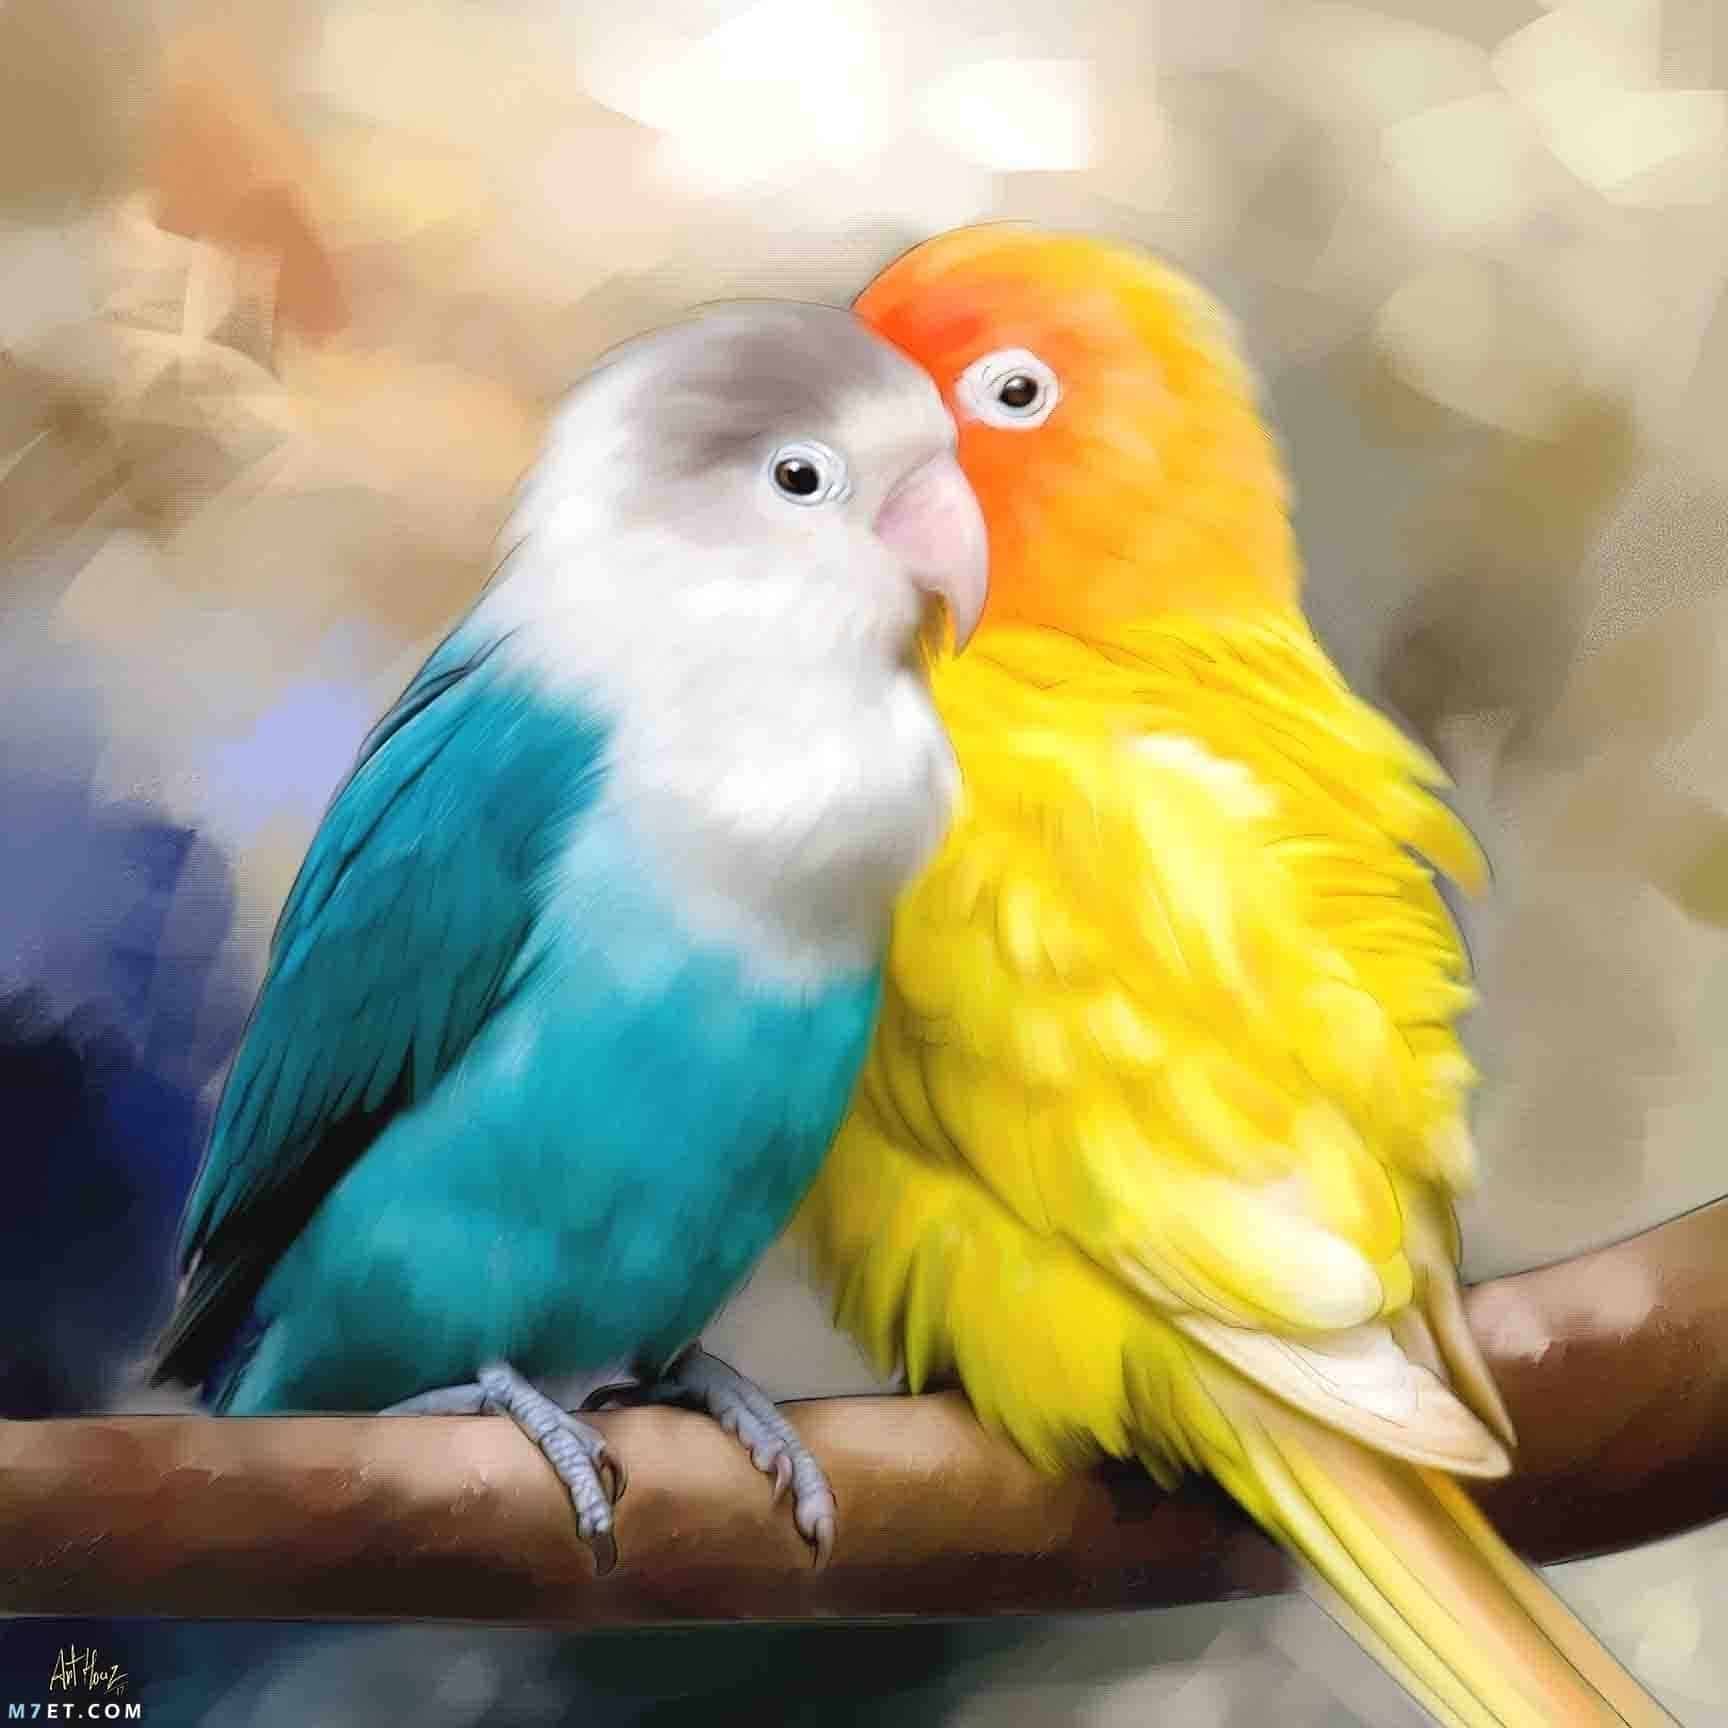 معلومات عن طيور الحب